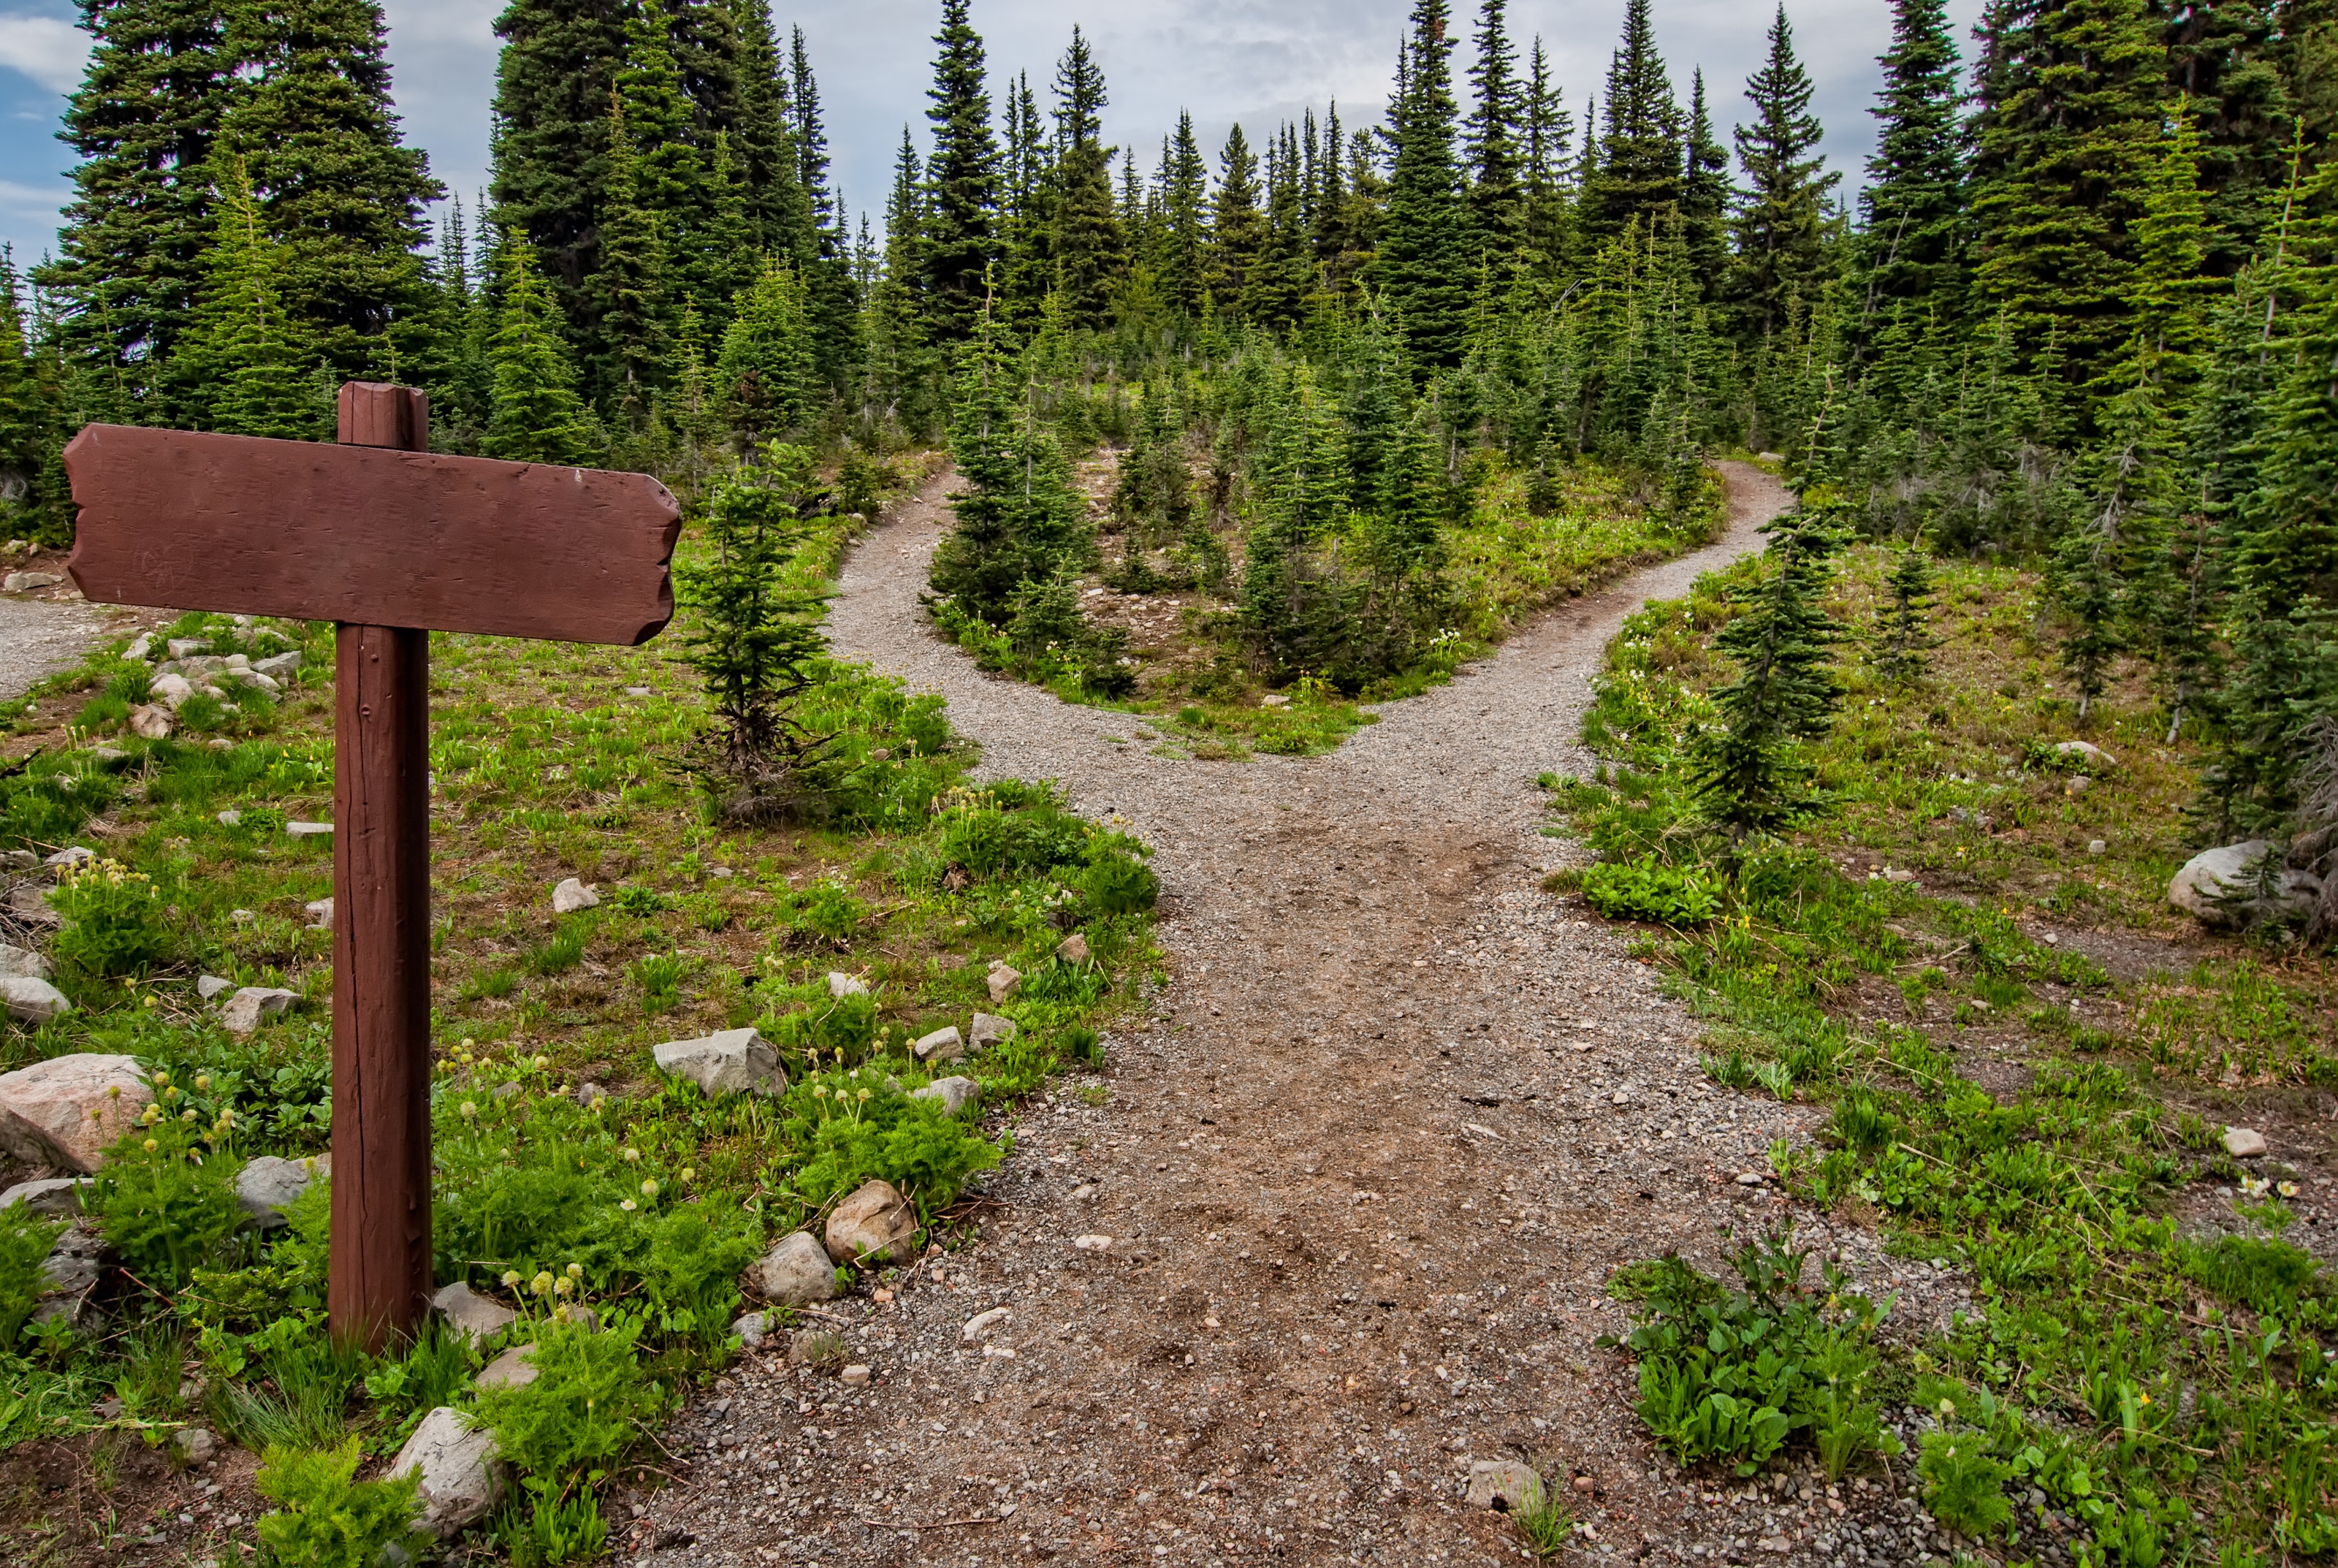 En la imagen se muestra un camino que se divide en dos en un bosque de árboles altos. A la izquierda de la imagen hay un cartel de dirección sin ninguna indicación.